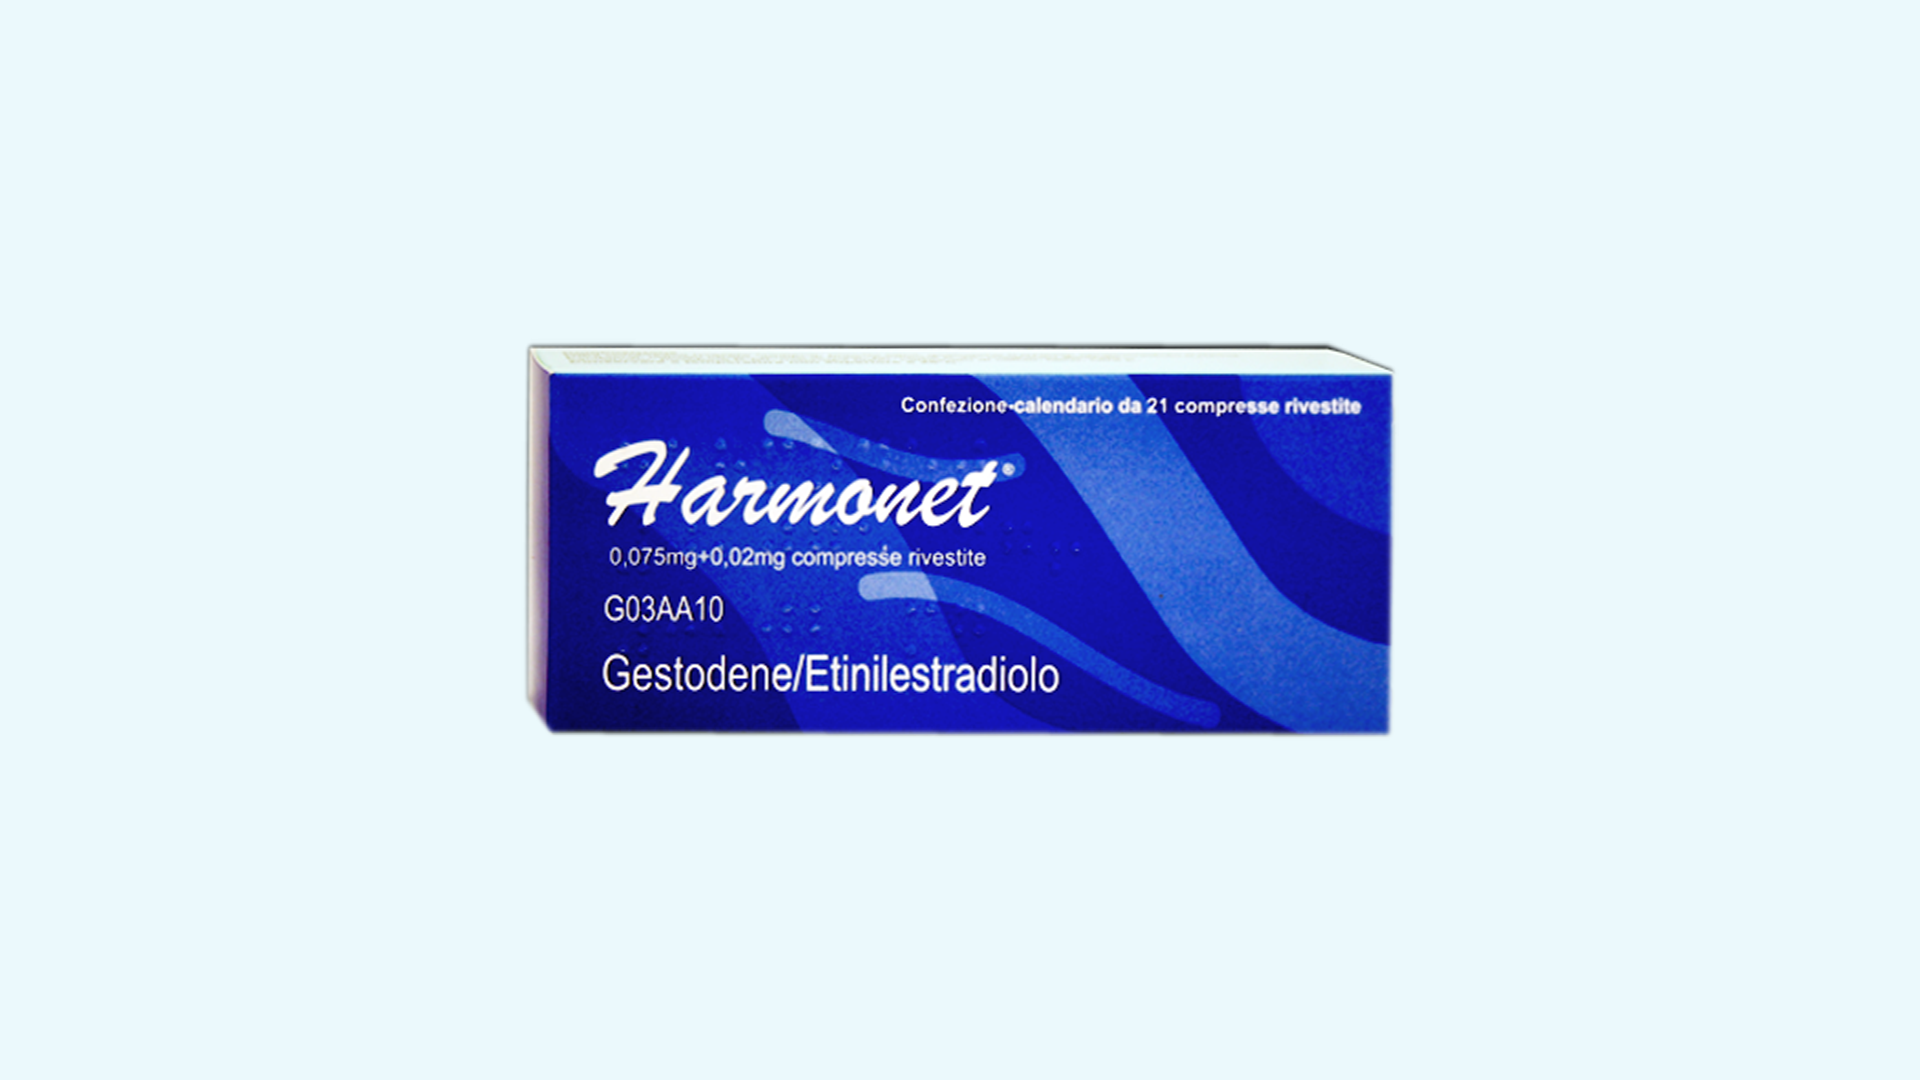 Harmonet – informacje o leku, dawkowanie oraz przeciwwskazania